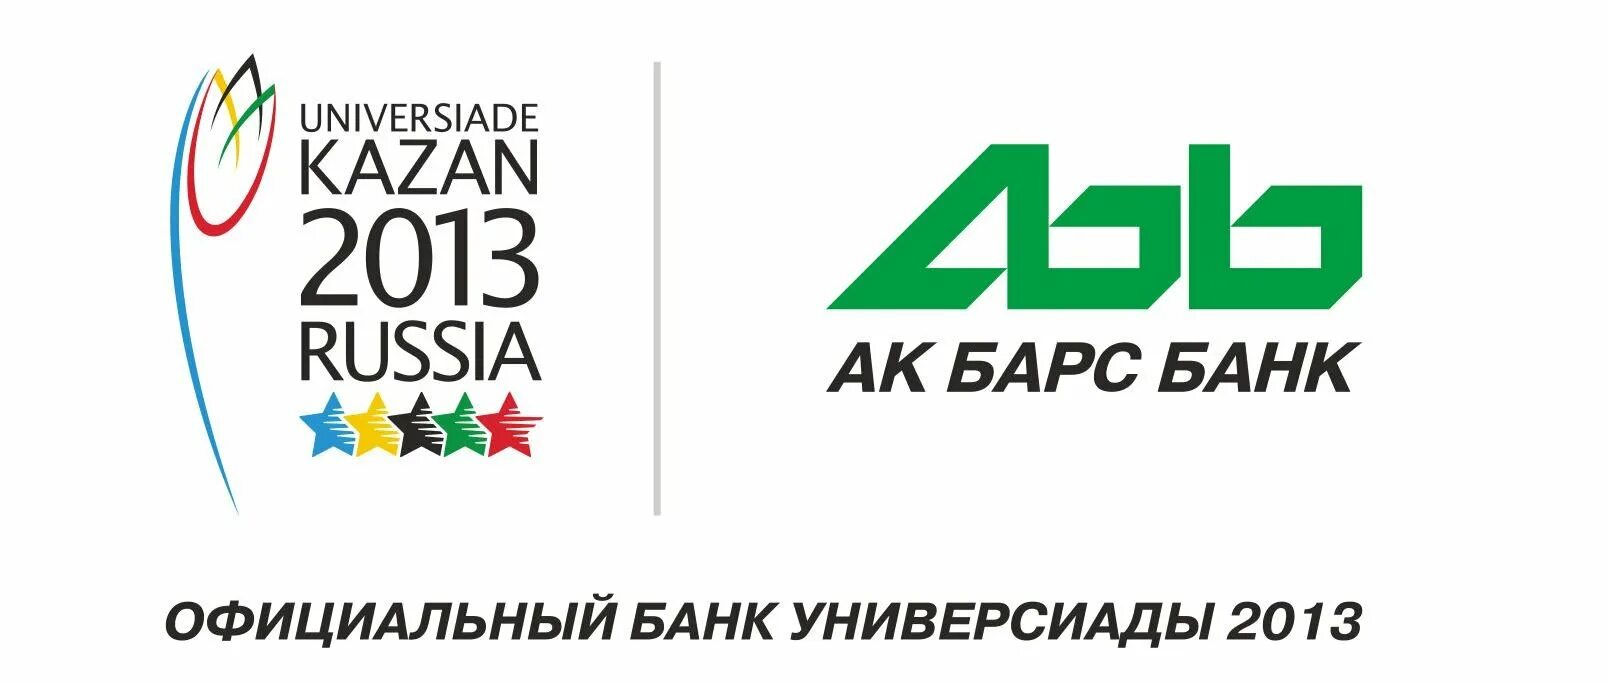 Ак барс банк новый. АК Барс банк логотип. Старый логотип АК Барс банка. Банк АК Барс в Новосибирске. АК Барс банк Саратов.